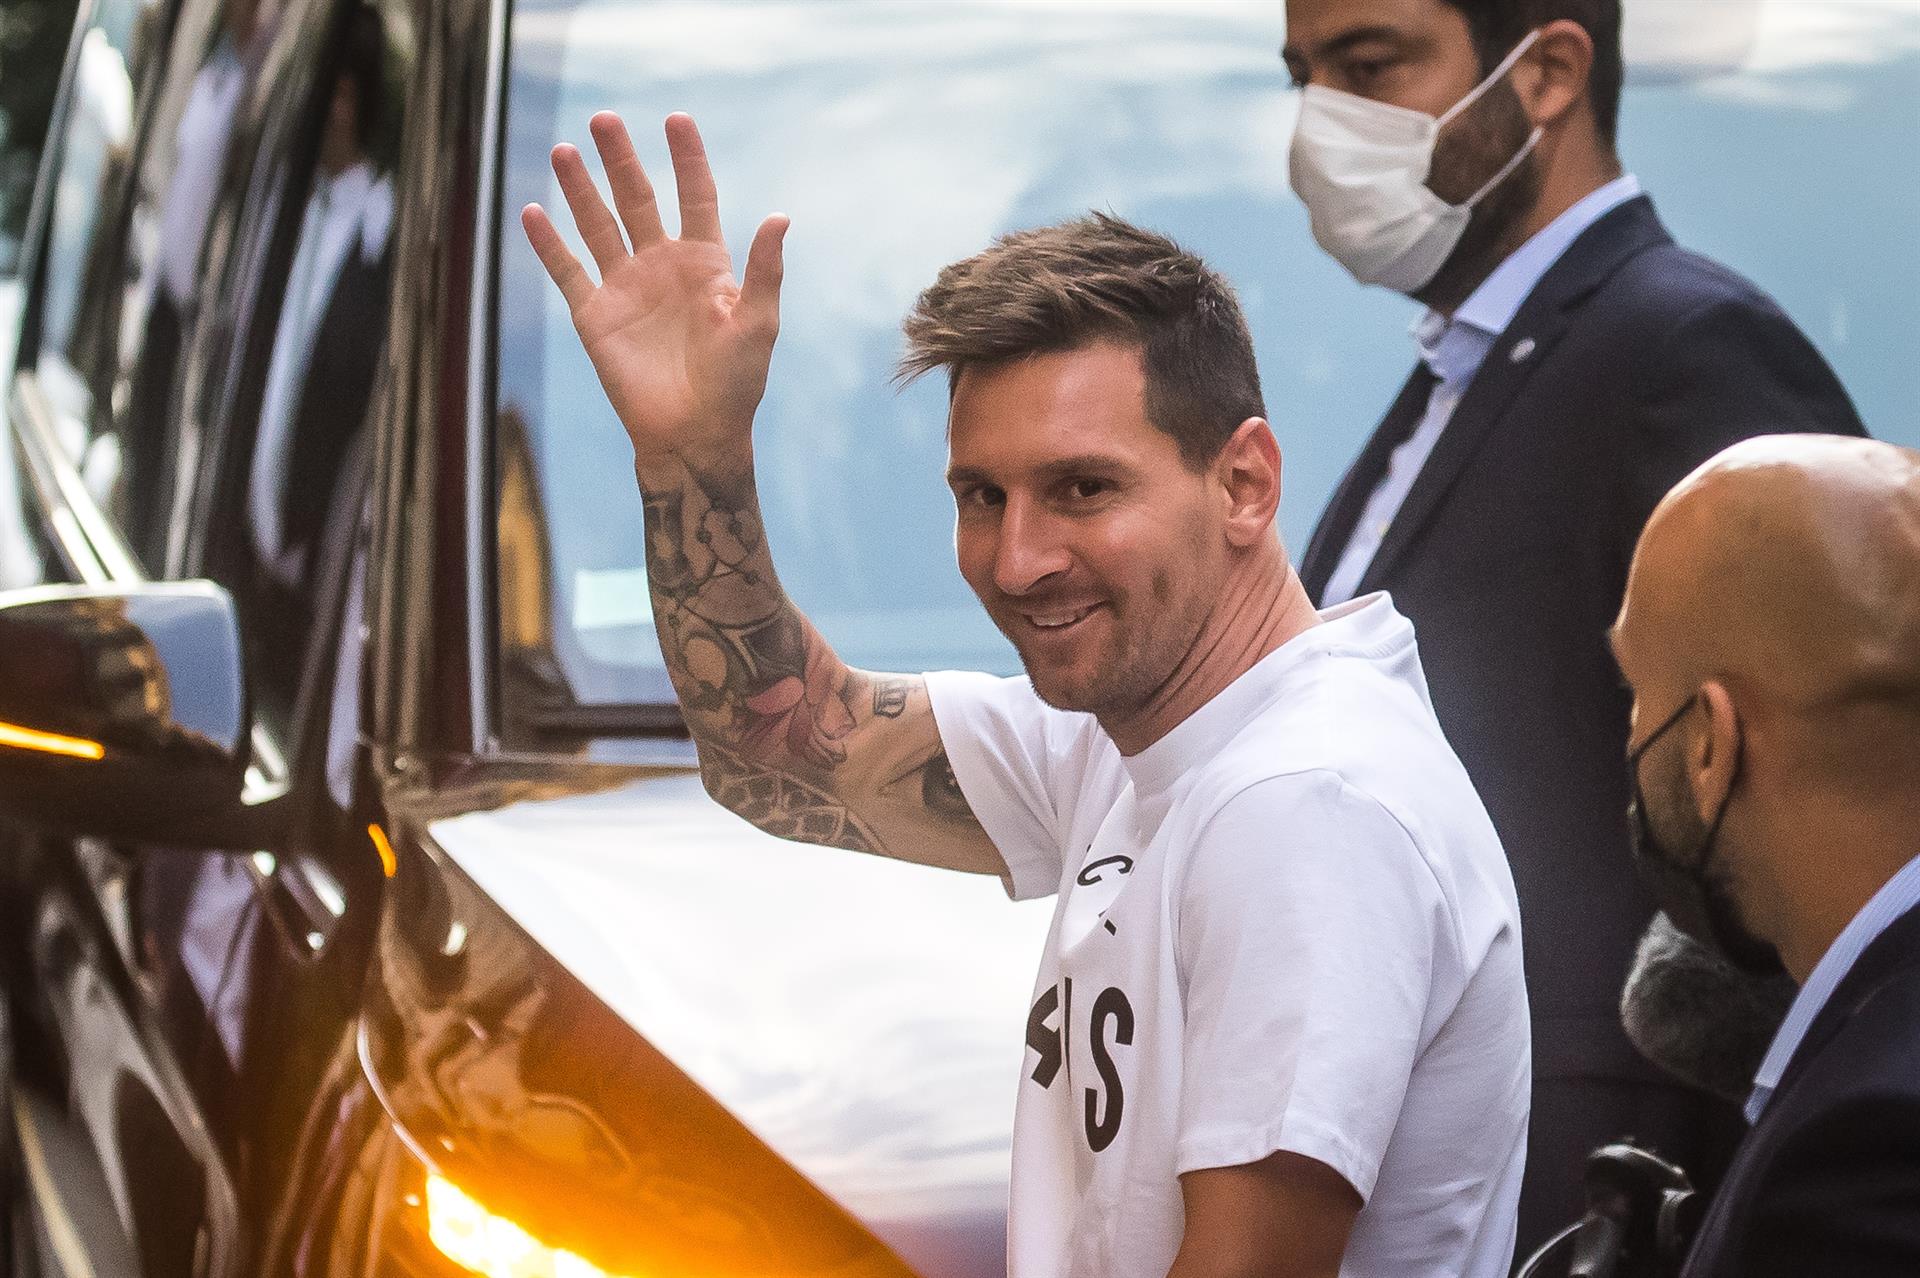 “Un nuevo diamante en París”: Épico VIDEO de la contratación de Messi por el PSG